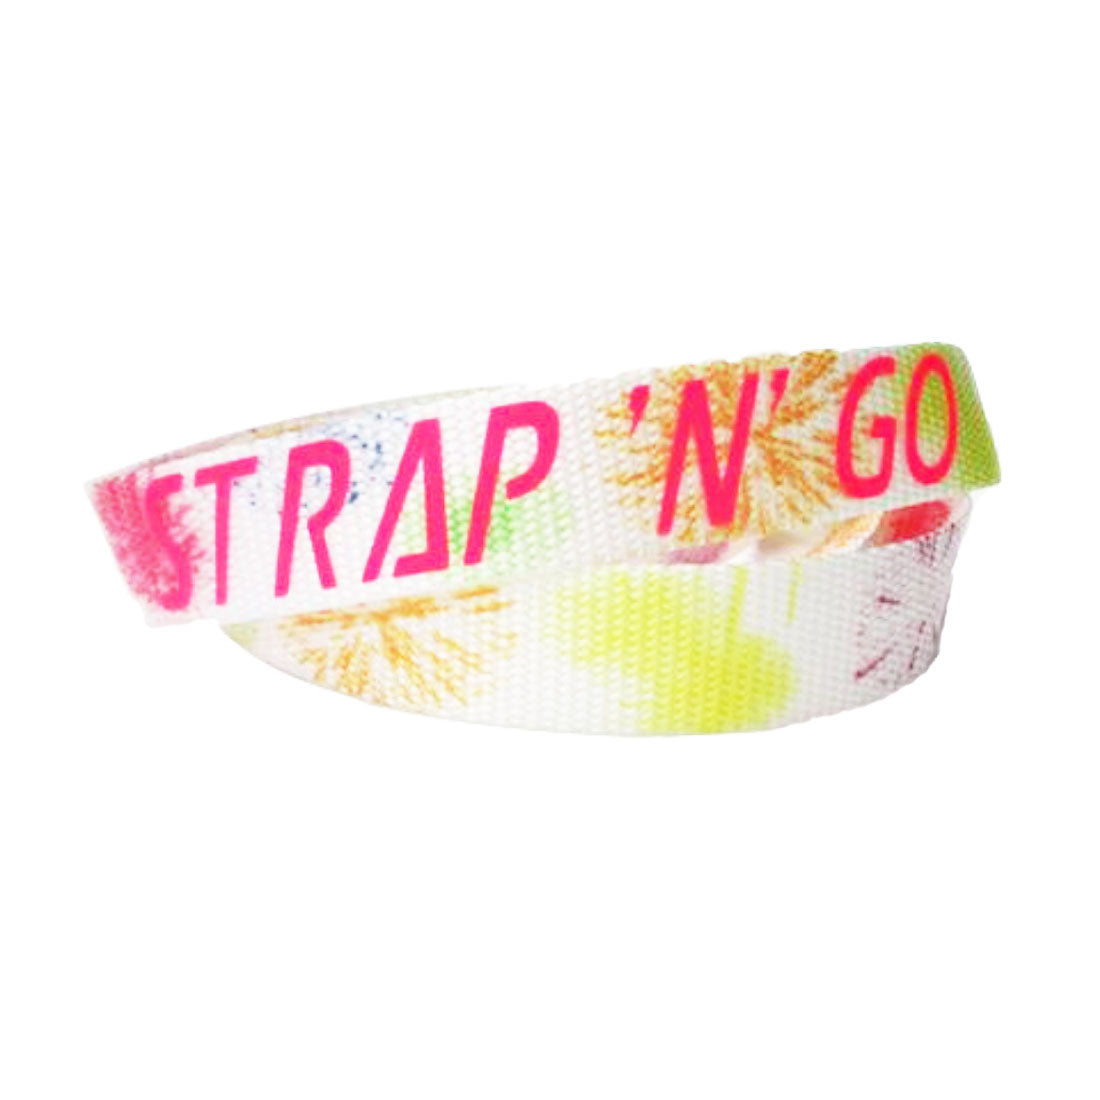 Strap N Go Skate Noose/Leash - Patterns Fireworks Roller Skate Accessories